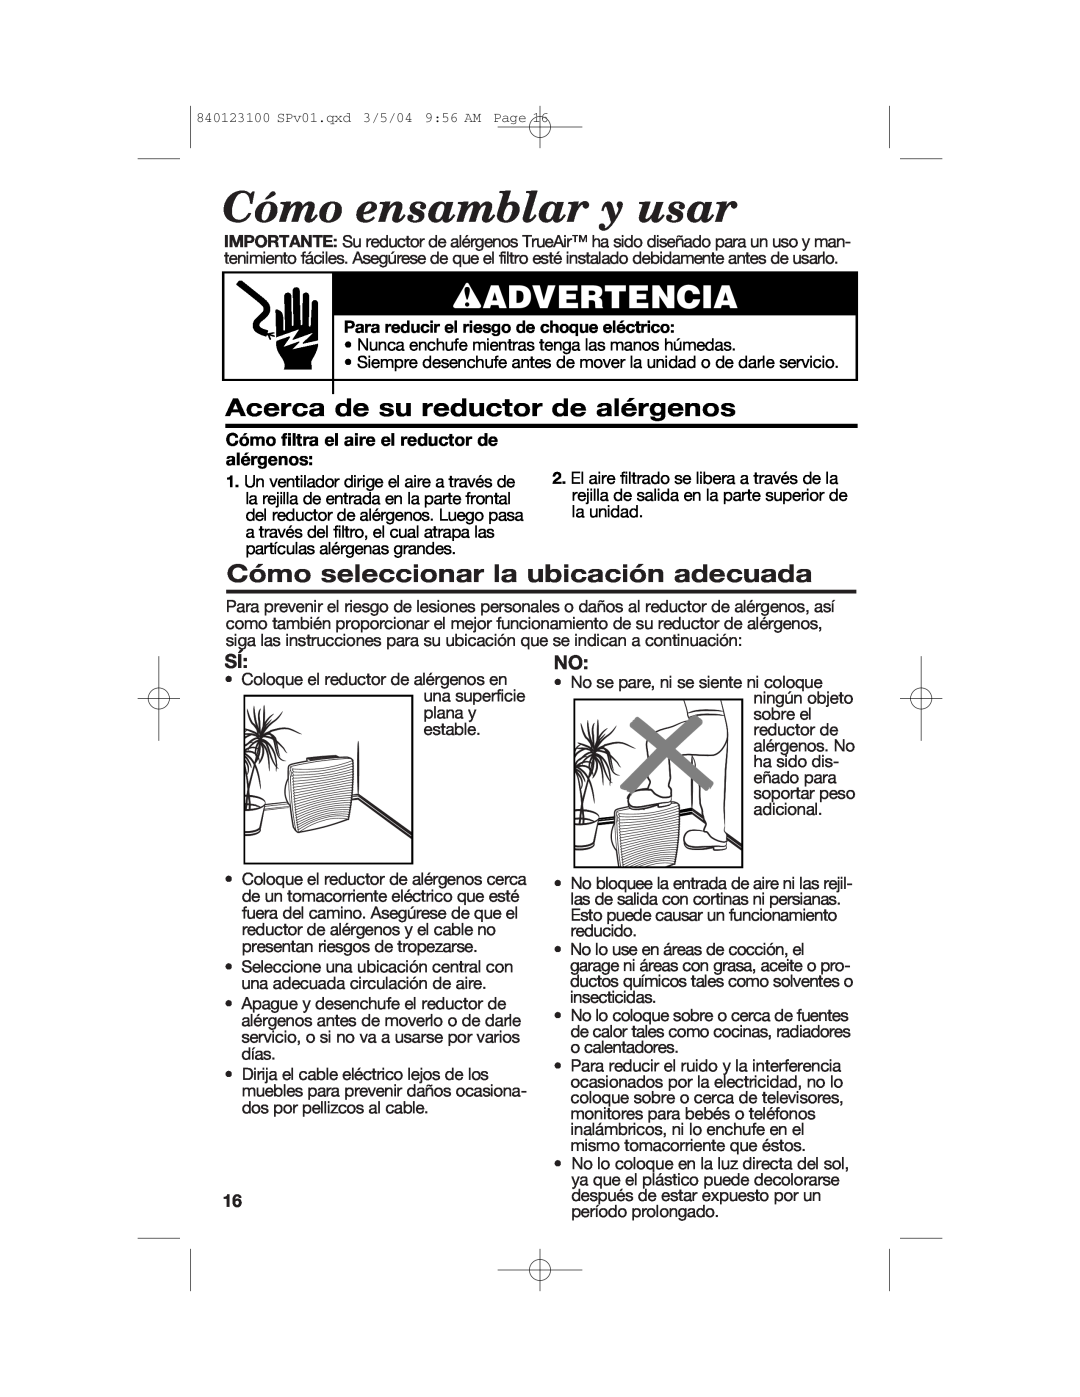 Hamilton Beach 840123100 manual Cómo ensamblar y usar, wADVERTENCIA, Acerca de su reductor de alérgenos 